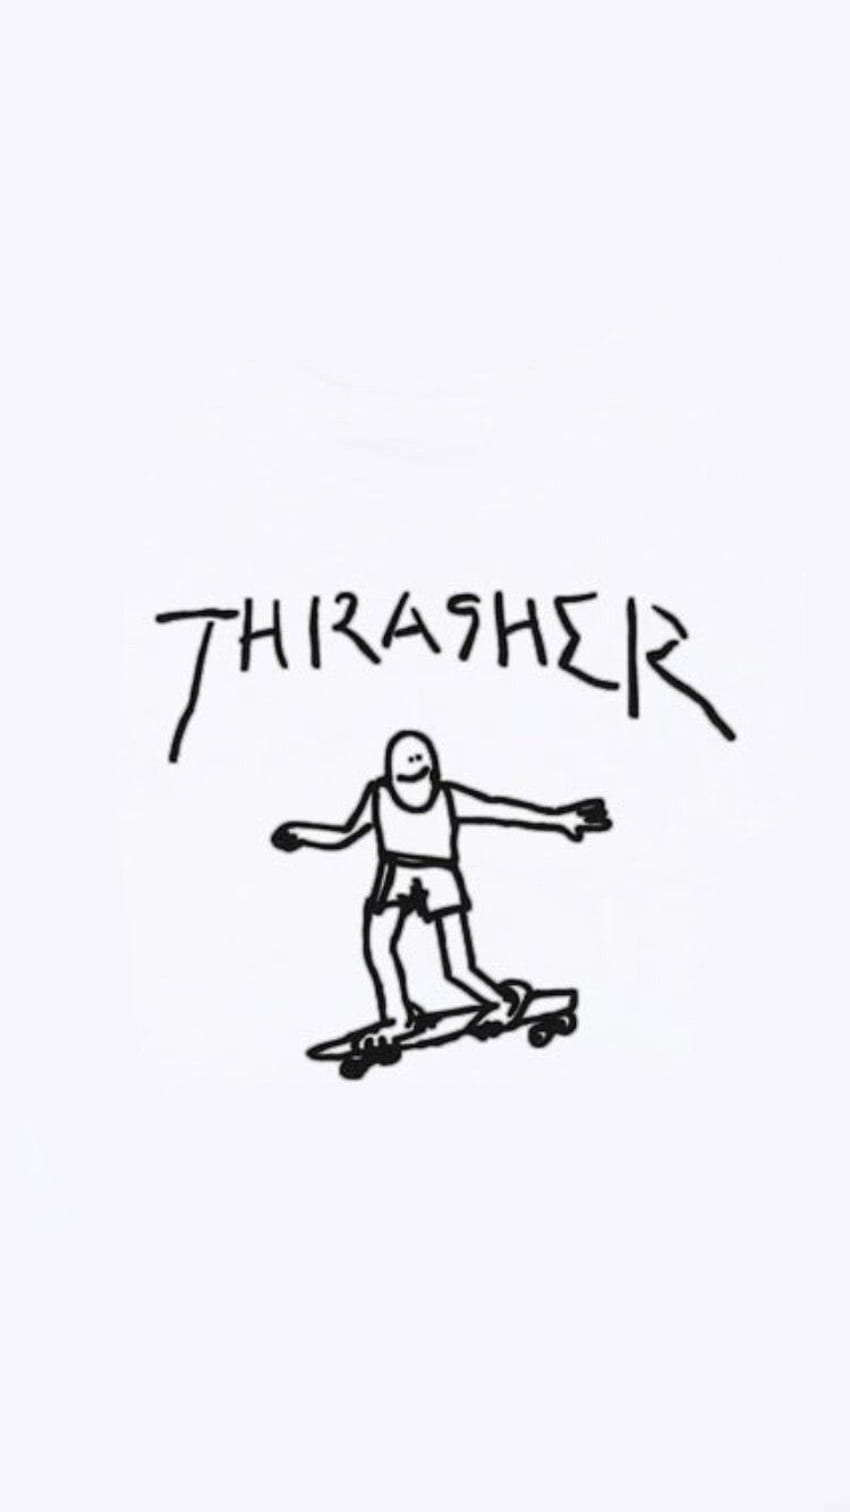 Thrasher skateboarding HD phone wallpaper